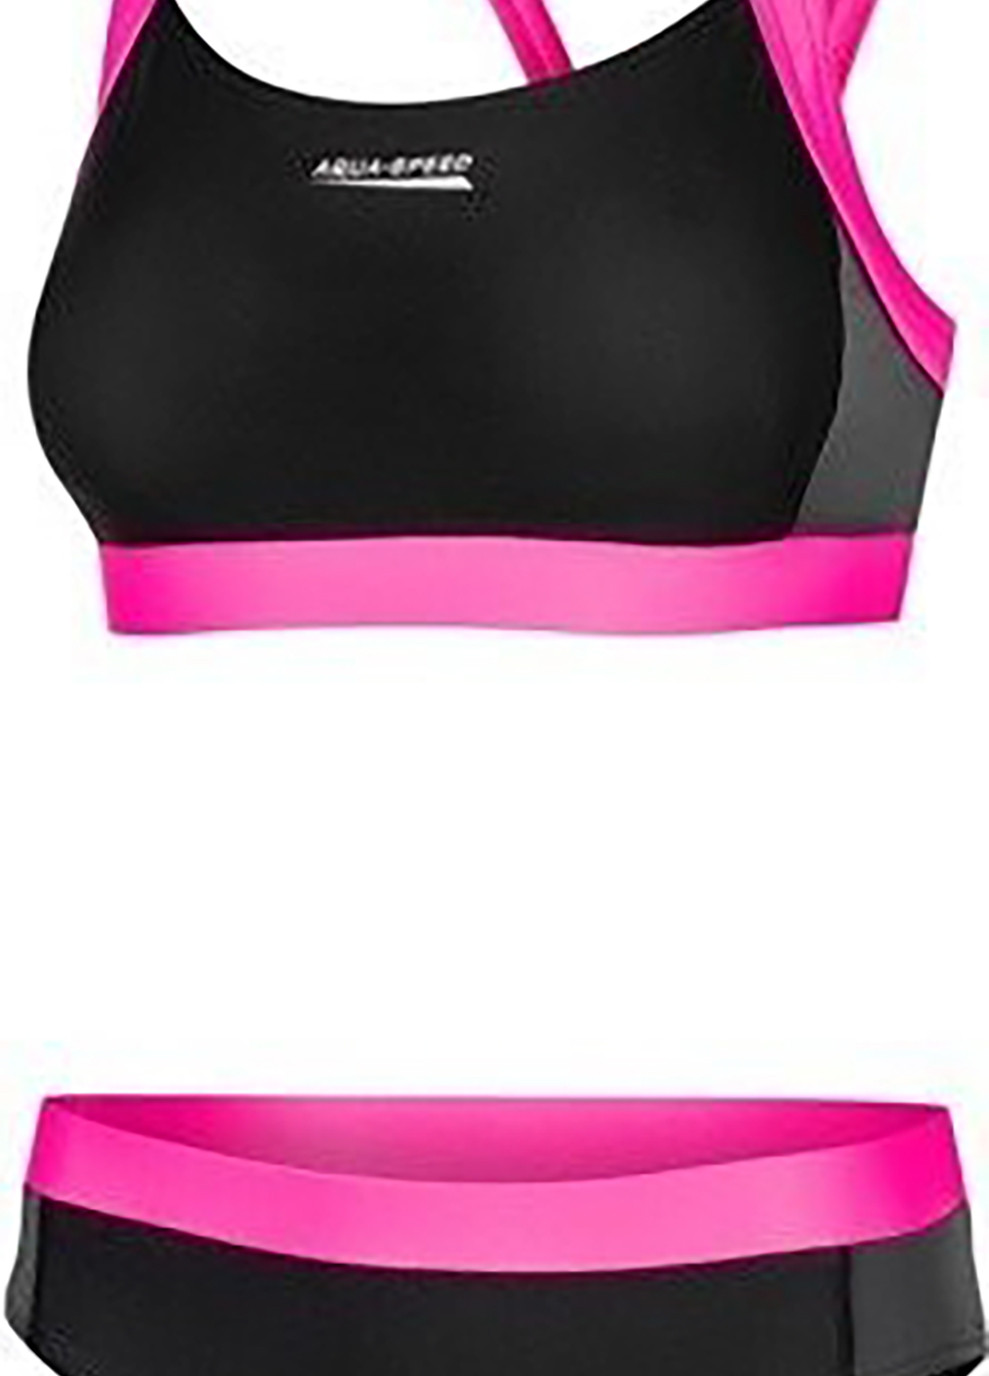 Комбинированный демисезонный купальник роздельный для женщин naomi 7108 черный, розовый жен Aqua Speed